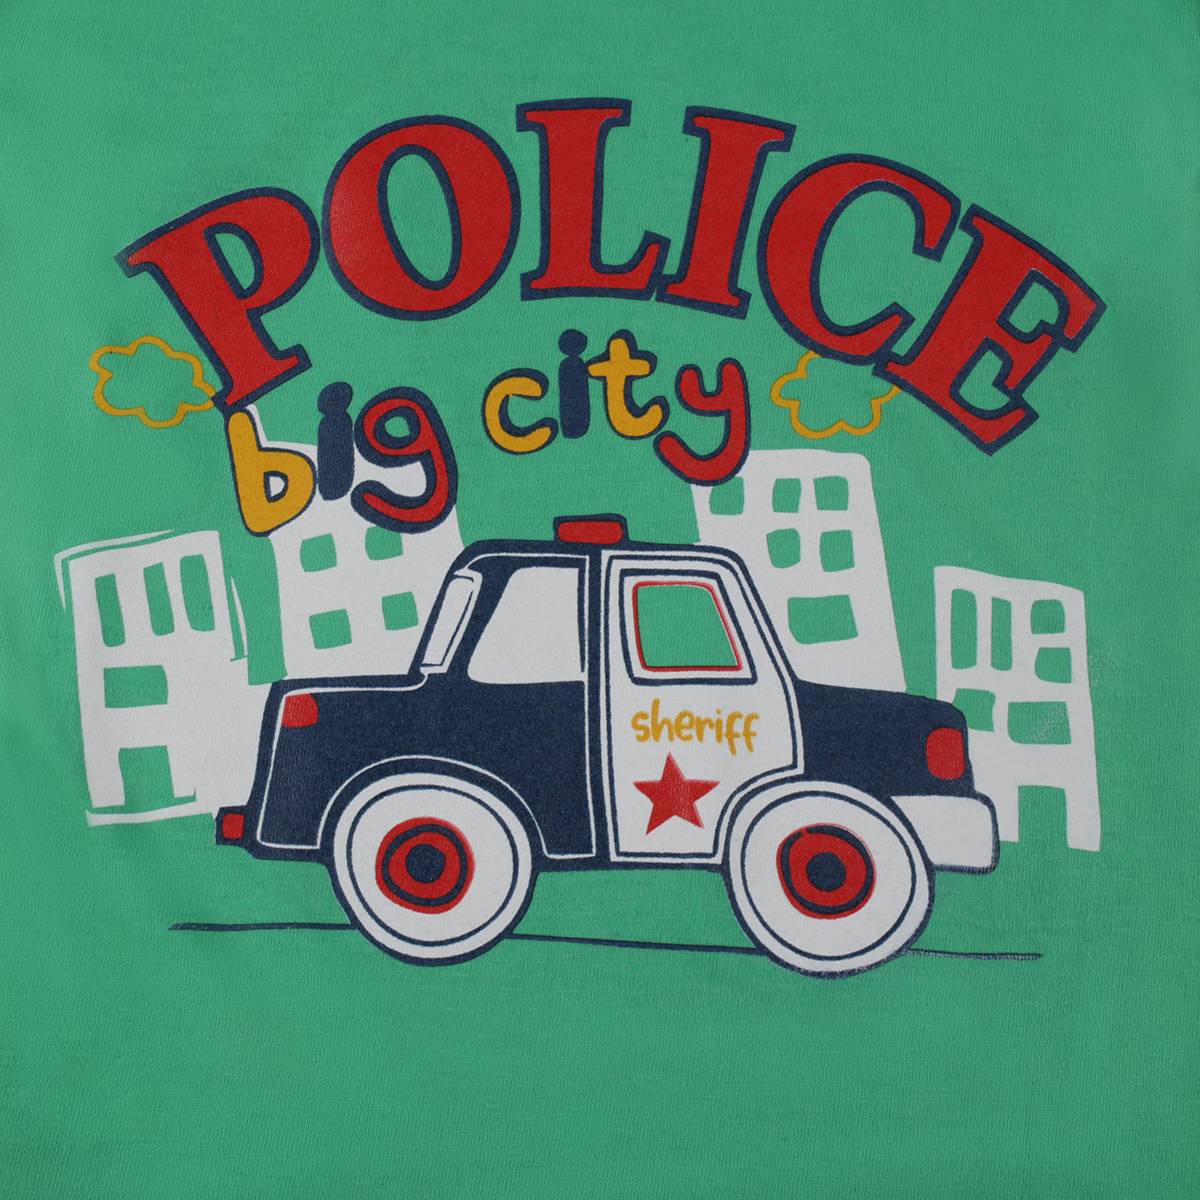 Koszulka chłopięca krótki rękaw, zielona z wozem policyjnym, Tup Tup